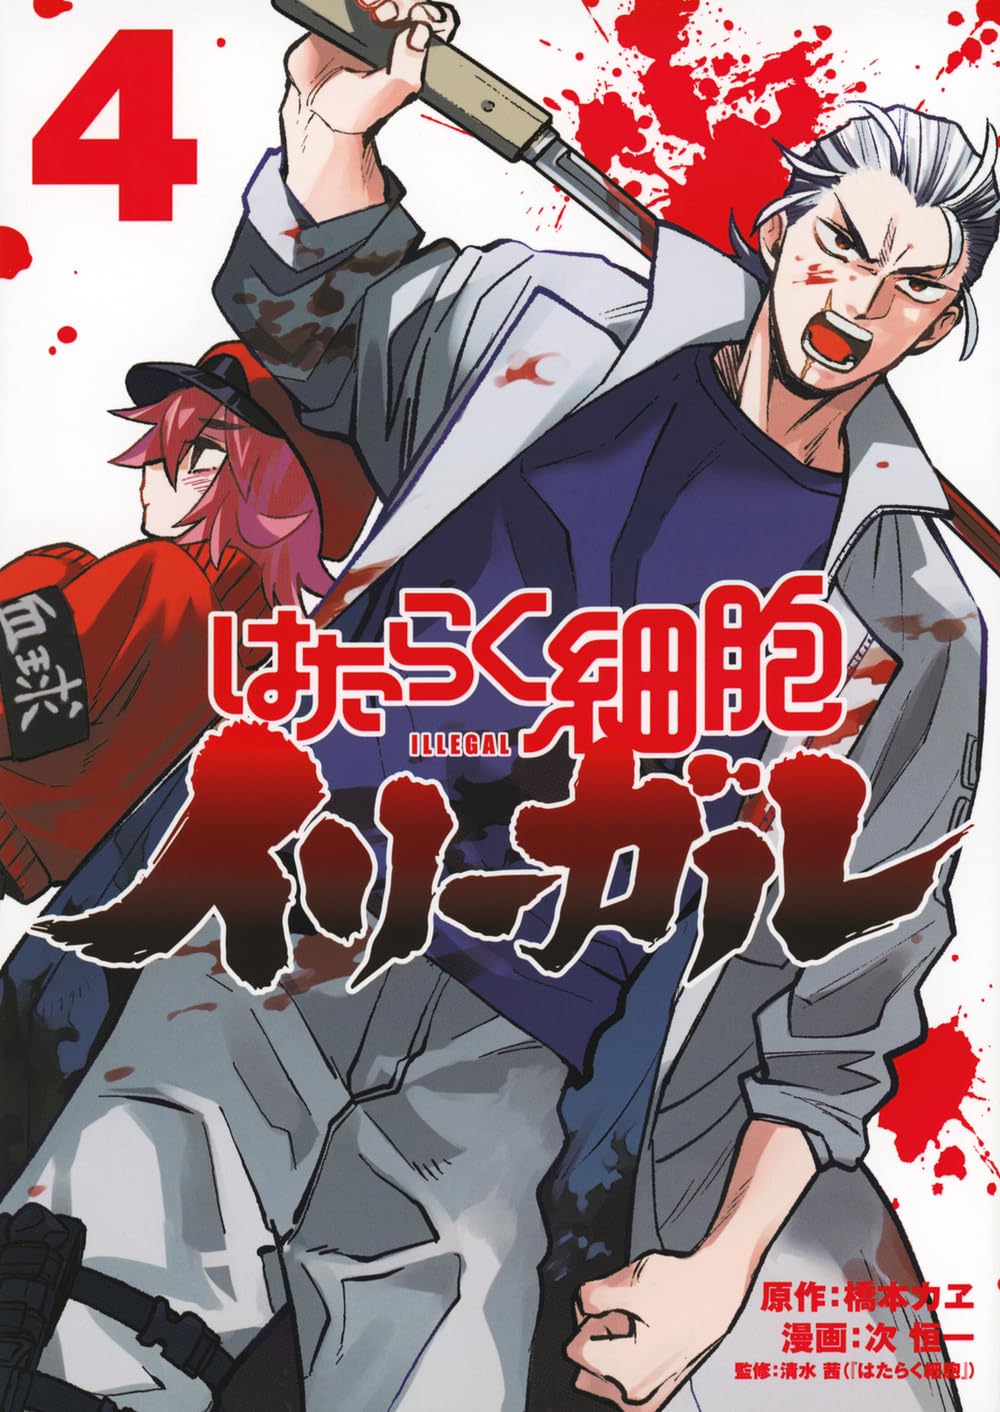 DISC] Hataraku Saibou Illegal (Cells at Work! Illegal) - Chapter 1 : r/manga